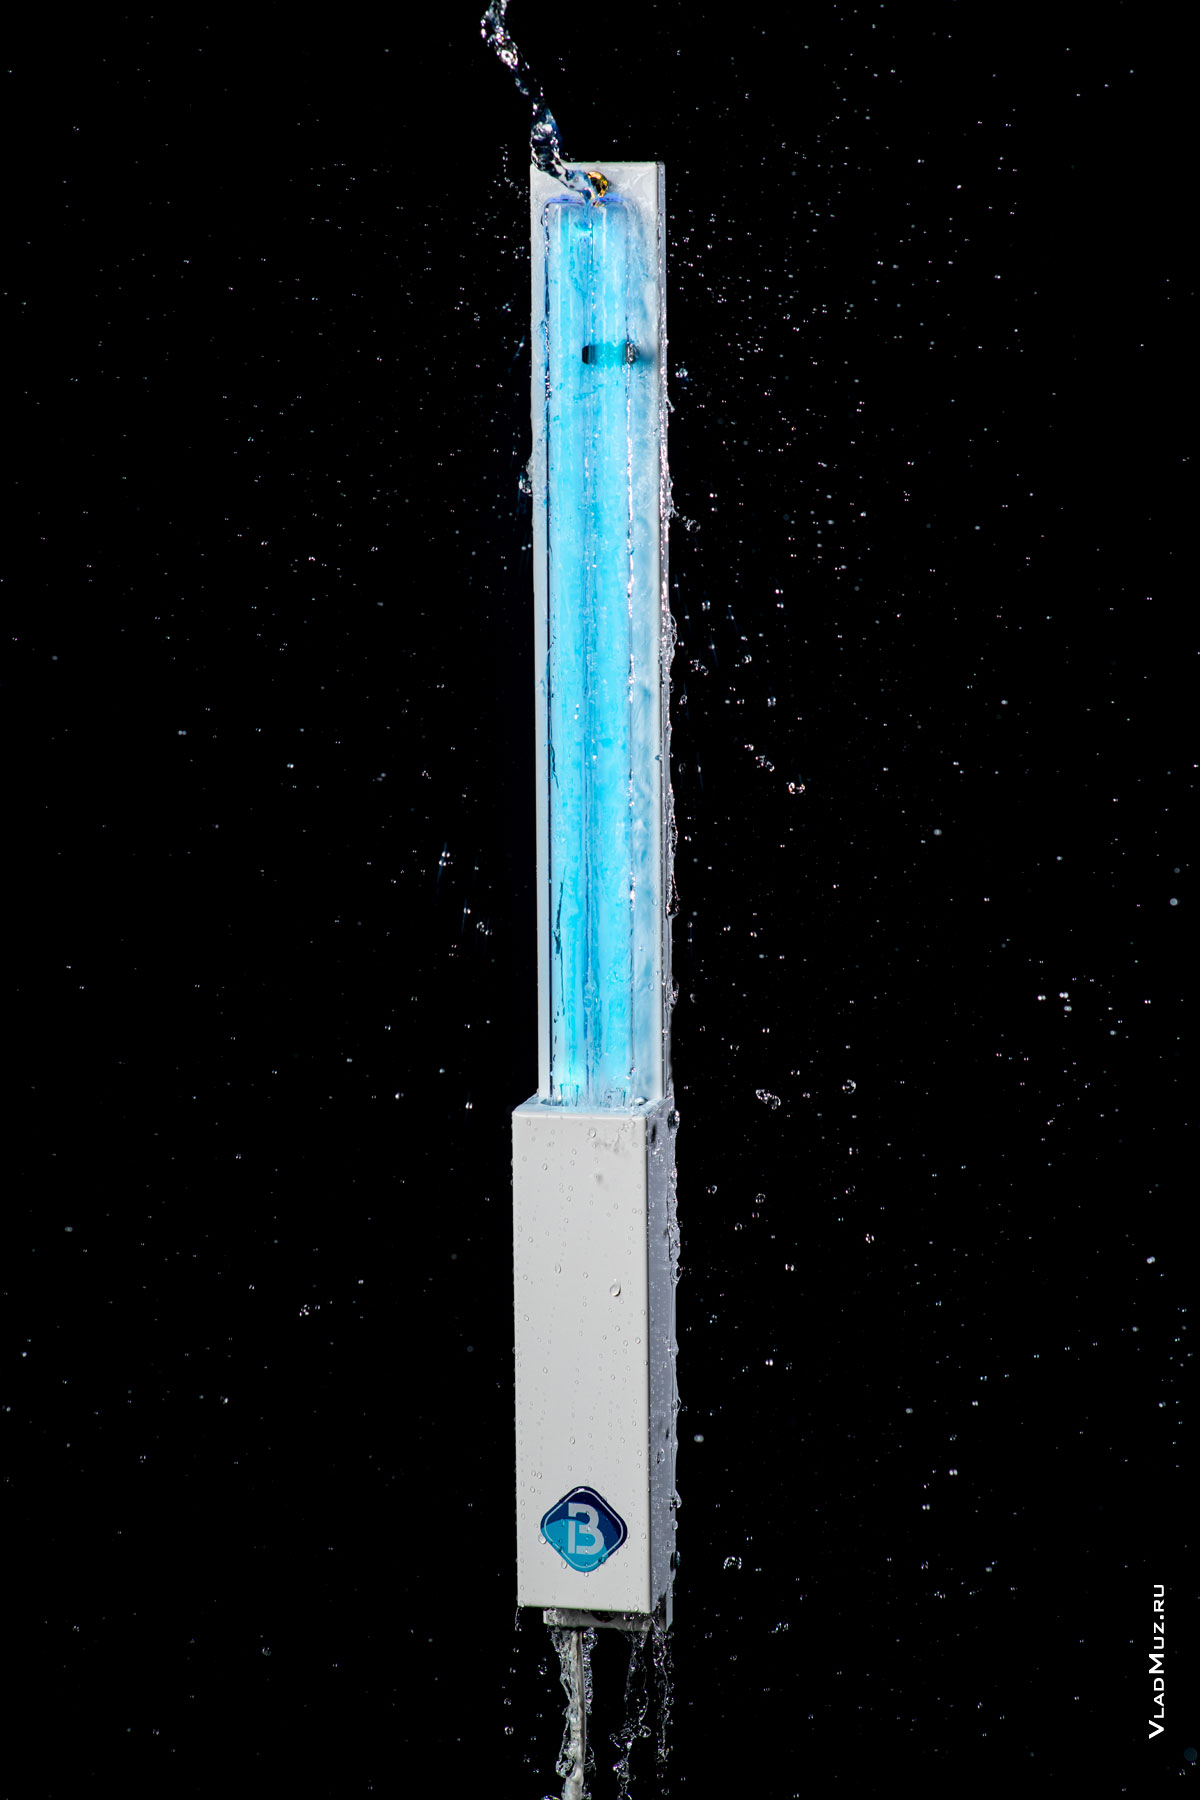 Фото УФ-облучателя Bact Ray в аквастудии под струей воды, на черном фоне